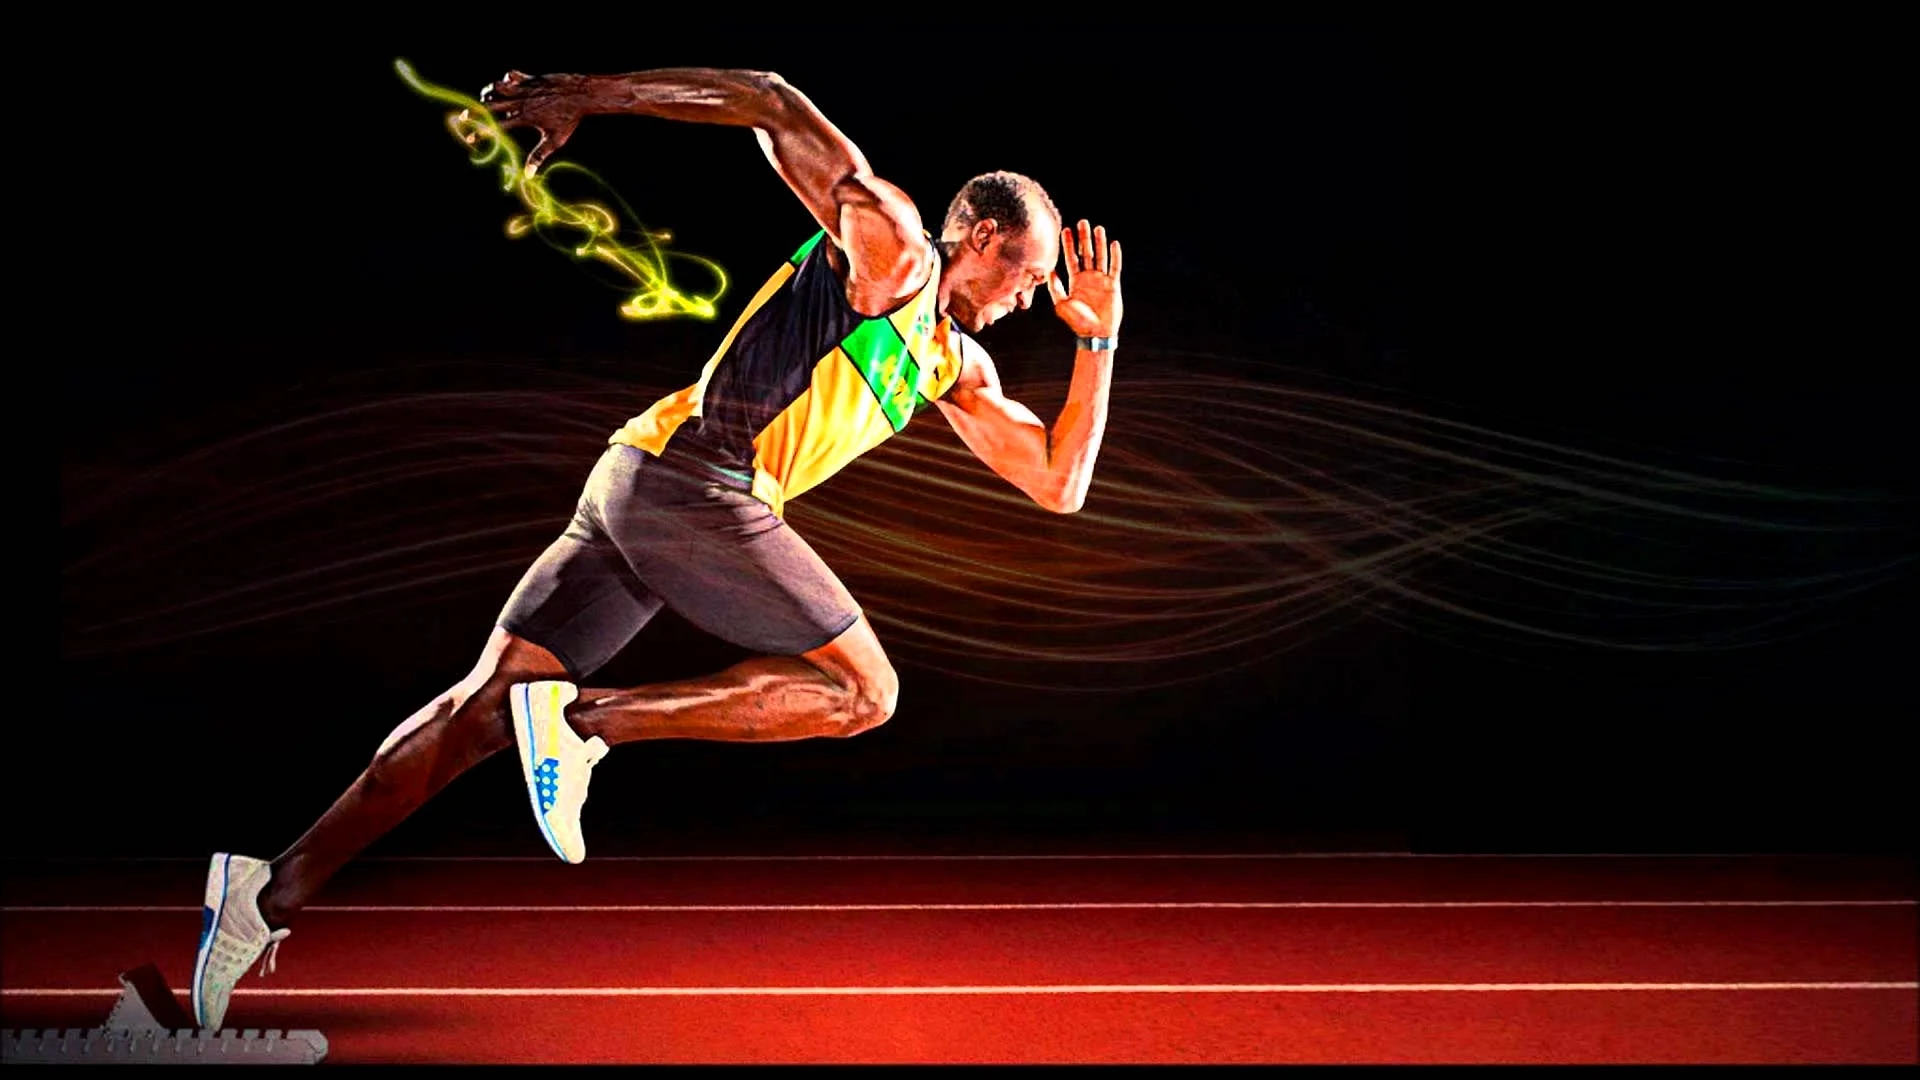 Usain Bolt Wallpaper